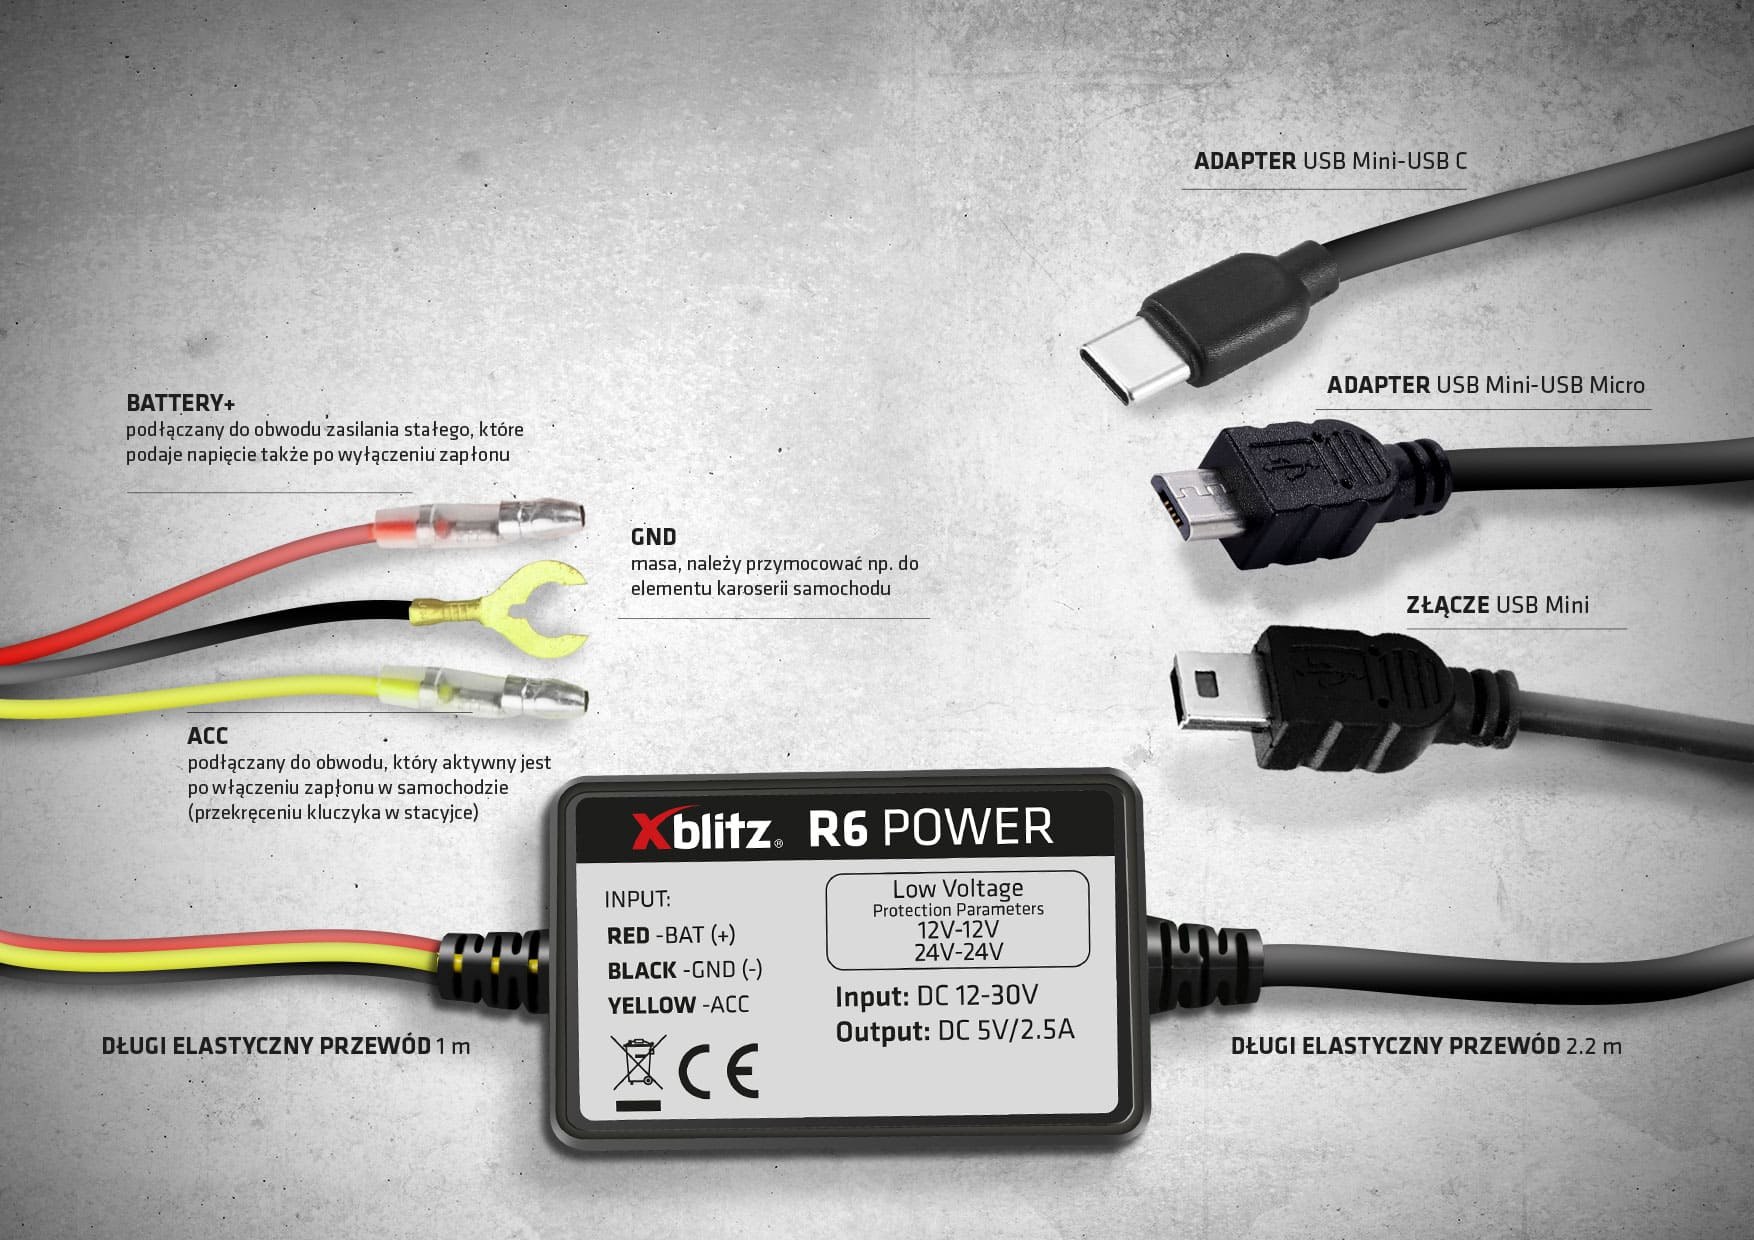 Xblitz R6 Power